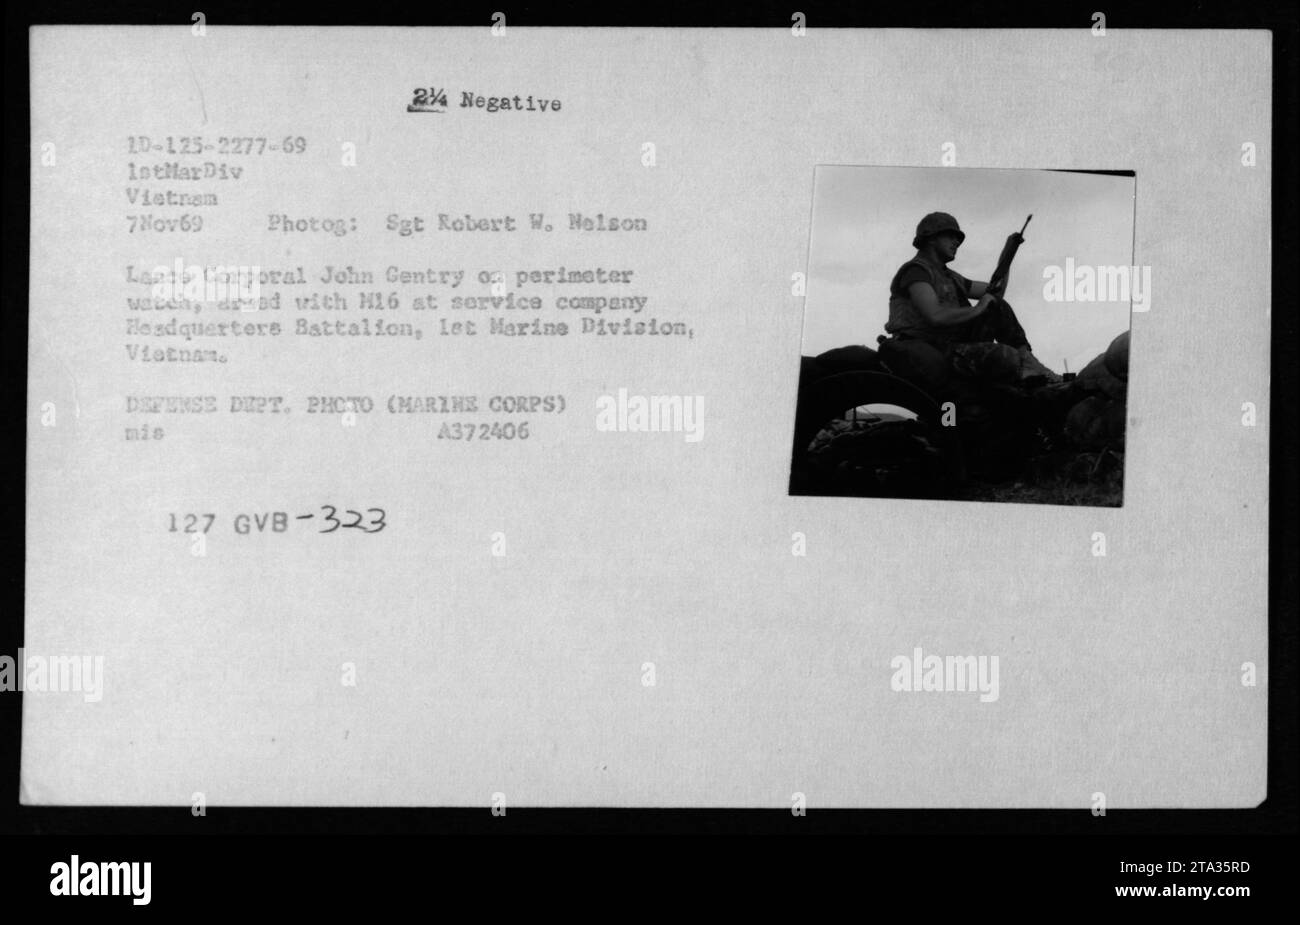 Lance Corporal John Gentry bewacht den Umkreis im Hauptquartier-Bataillon der 1. Marine-Division in Vietnam am 7. November 1969. Er ist mit einem H16-Gewehr bewaffnet, während er Wachdienst hat. Dieses Foto zeigt die erhöhten Sicherheitsmaßnahmen während des Vietnamkriegs. Stockfoto